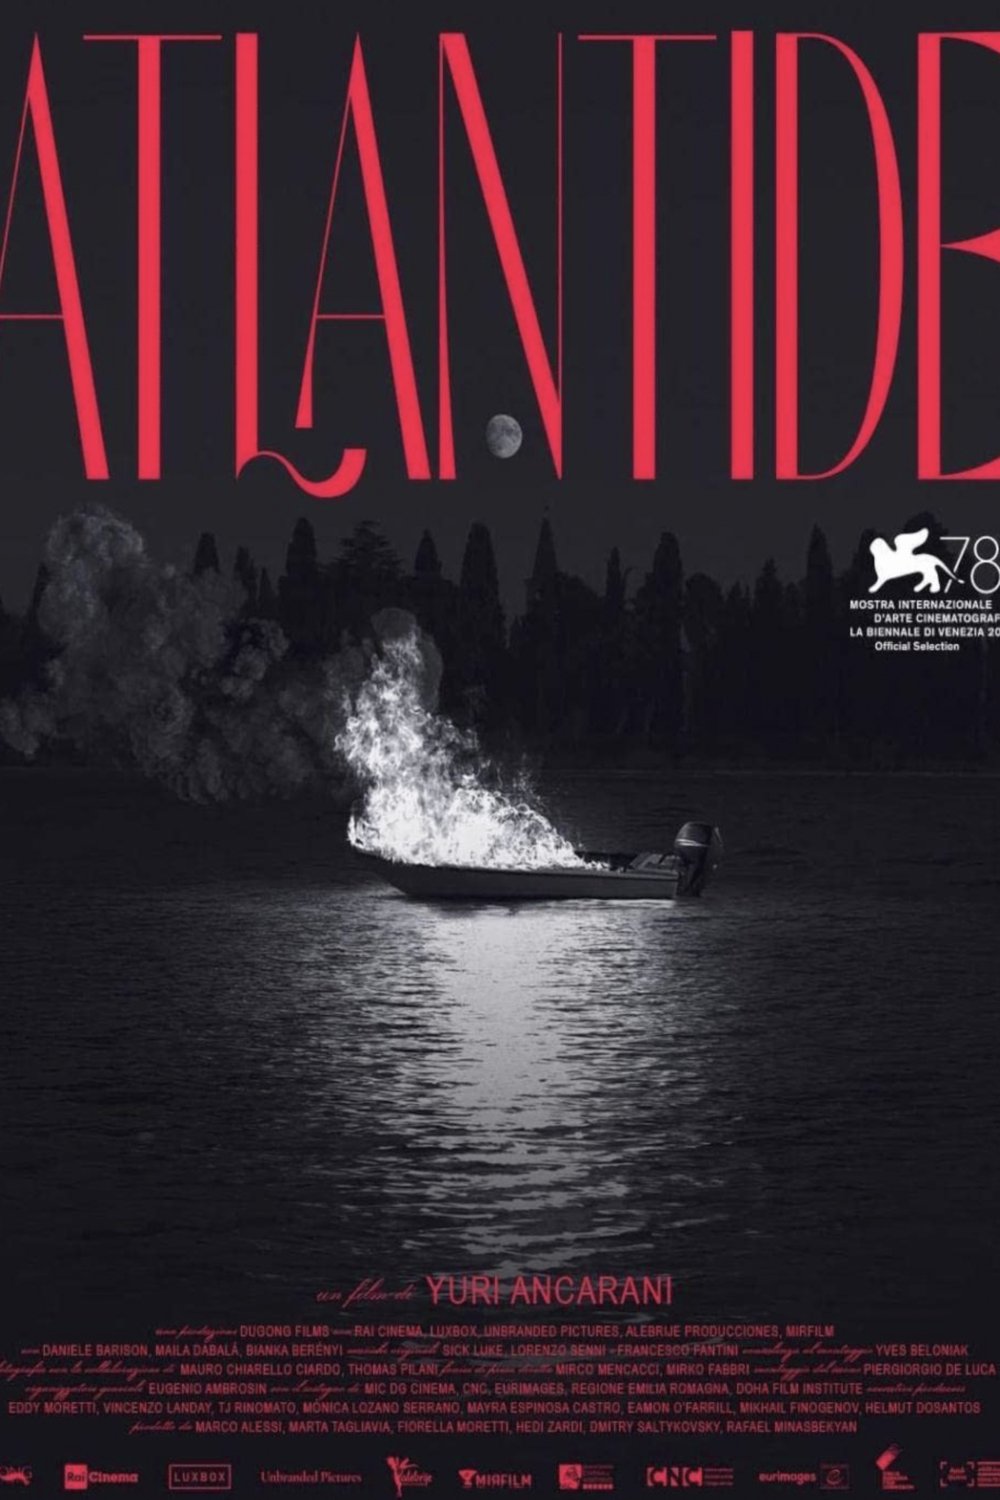 Italian poster of the movie Atlantis